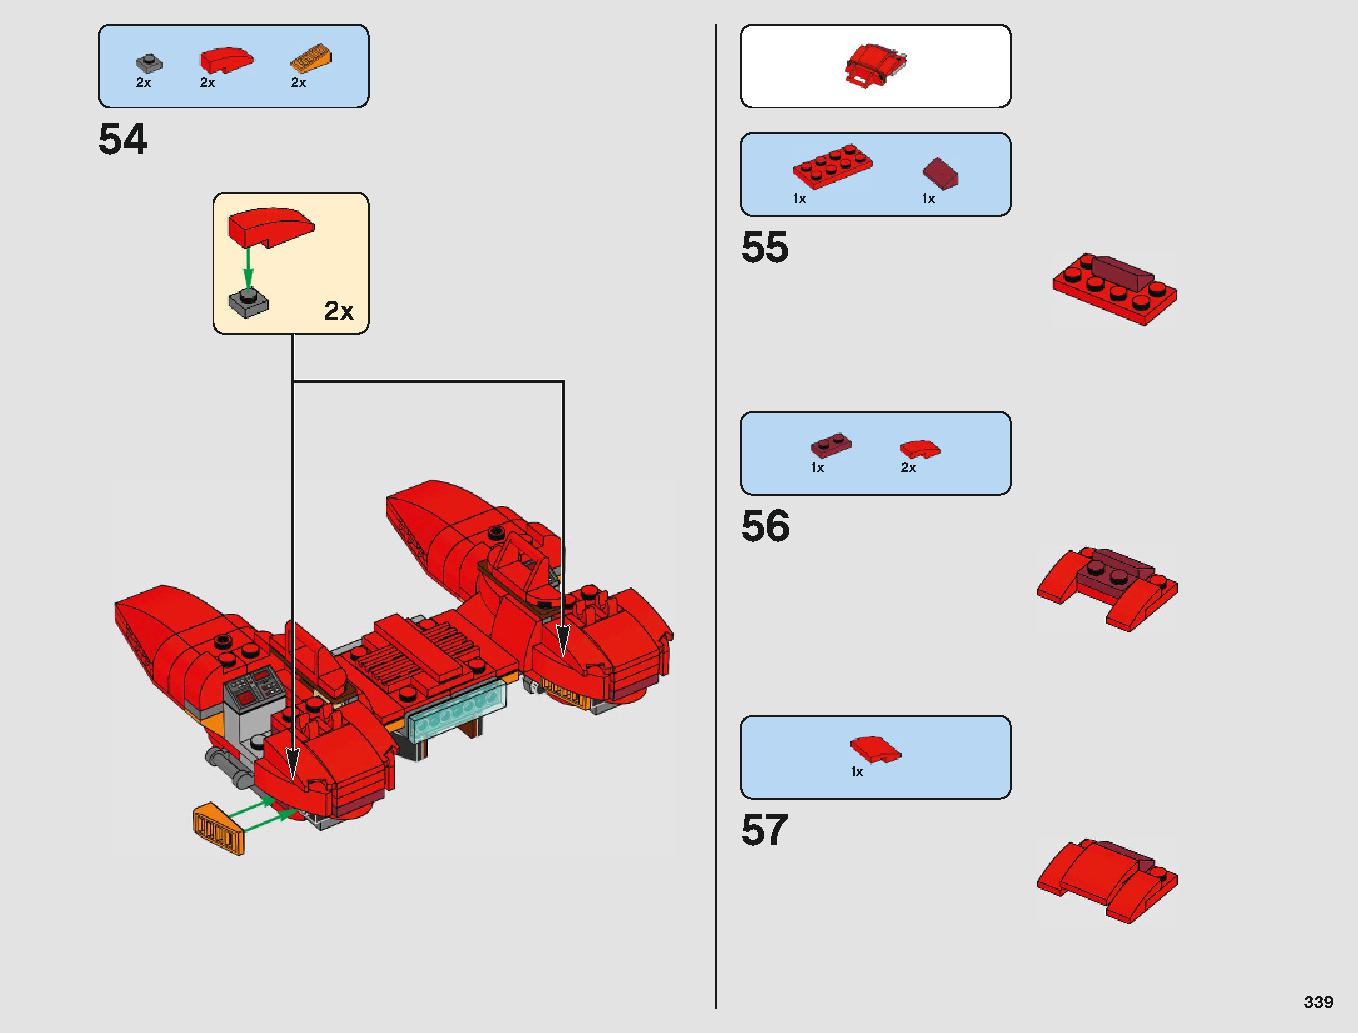 クラウド・シティ 75222 レゴの商品情報 レゴの説明書・組立方法 339 page